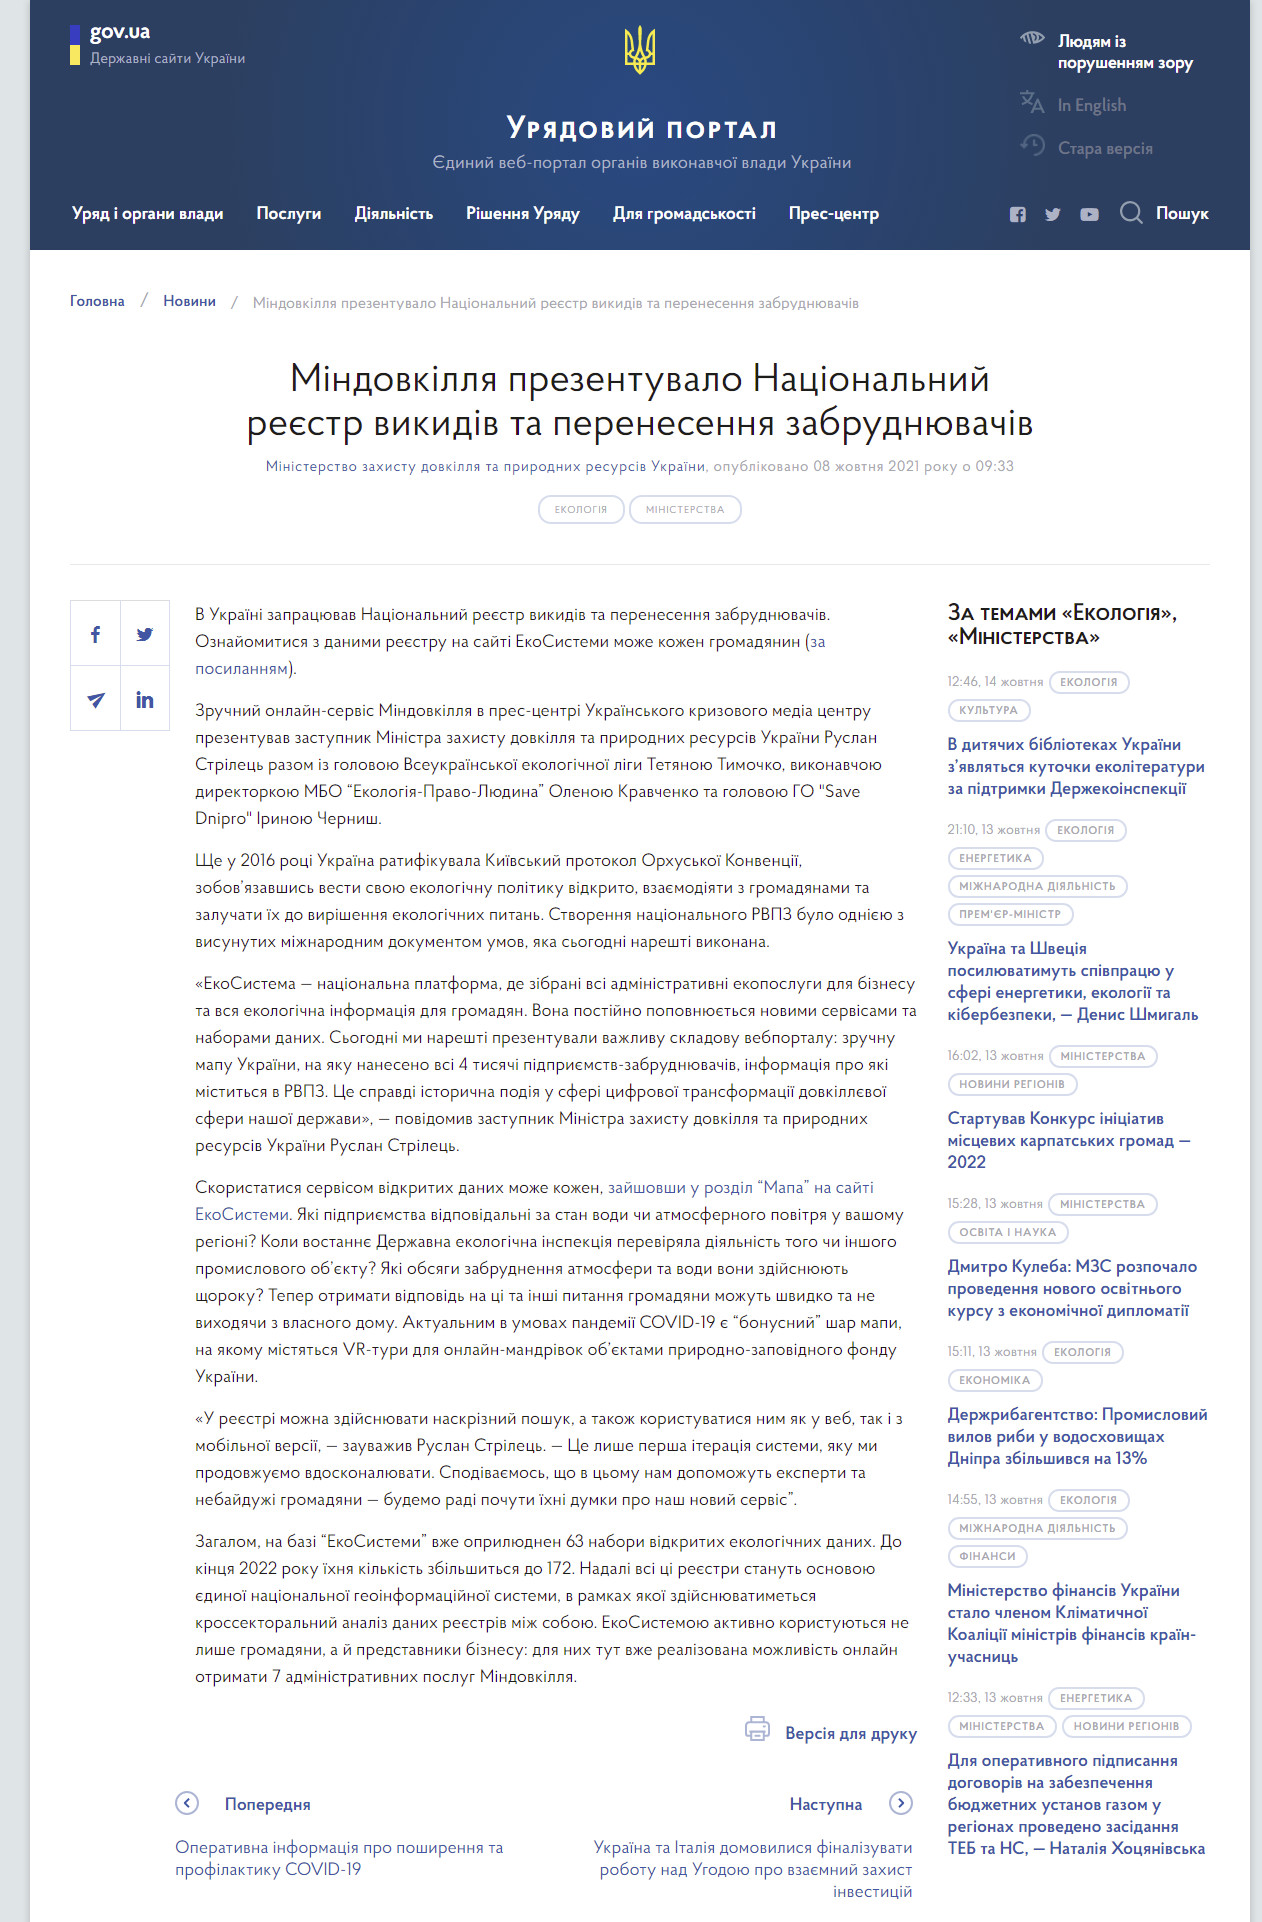 https://www.kmu.gov.ua/news/mindovkillya-prezentuvalo-nacionalnij-reyestr-vikidiv-ta-perenesennya-zabrudnyuvachiv